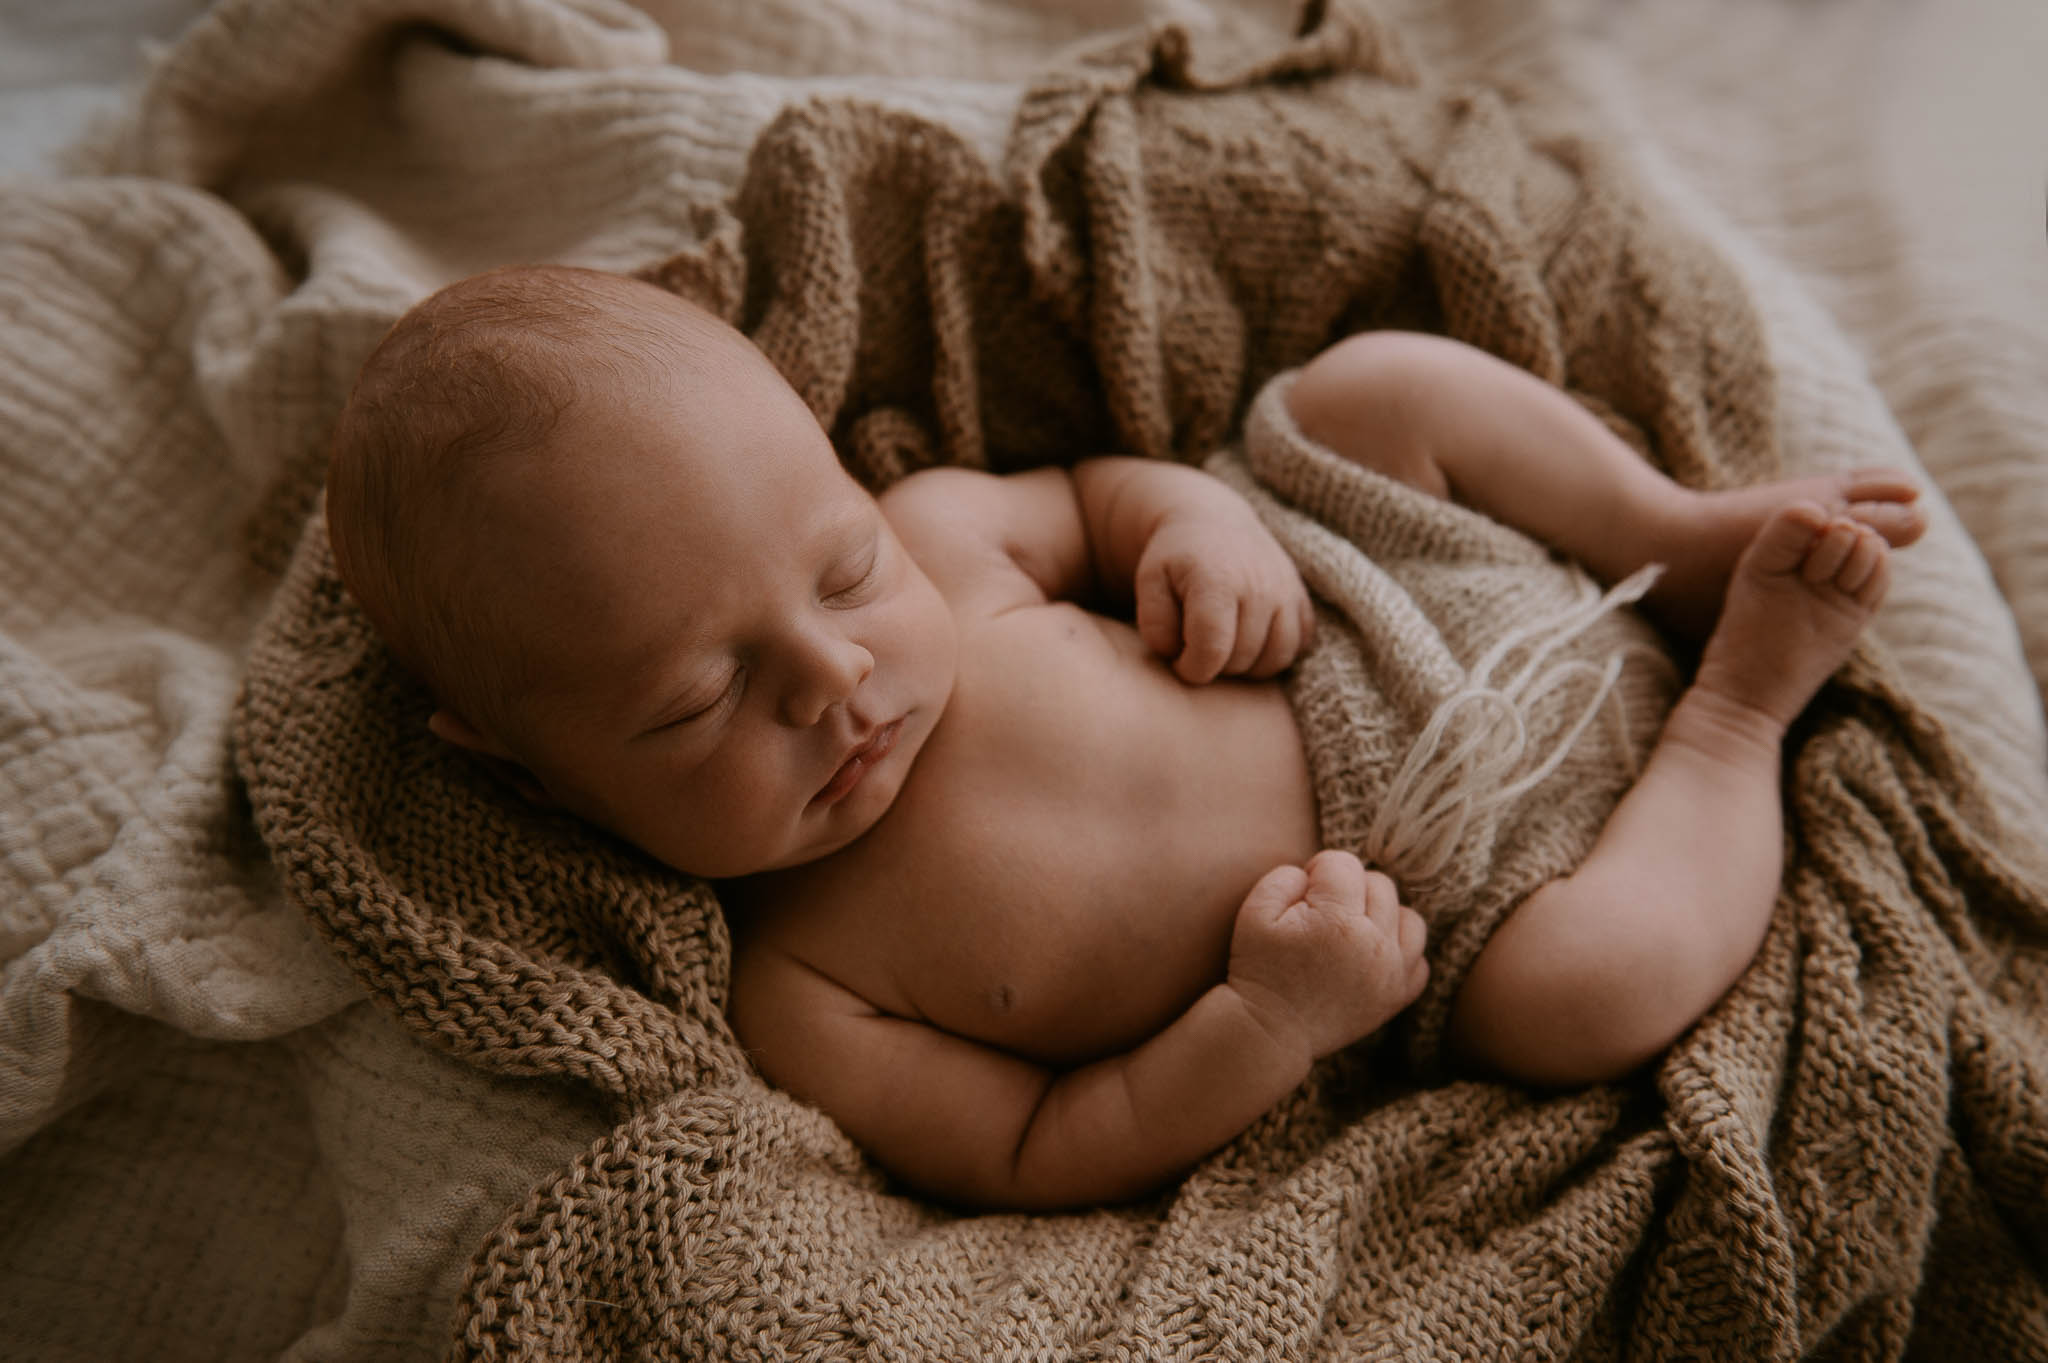 southampton-newborn-photography-477